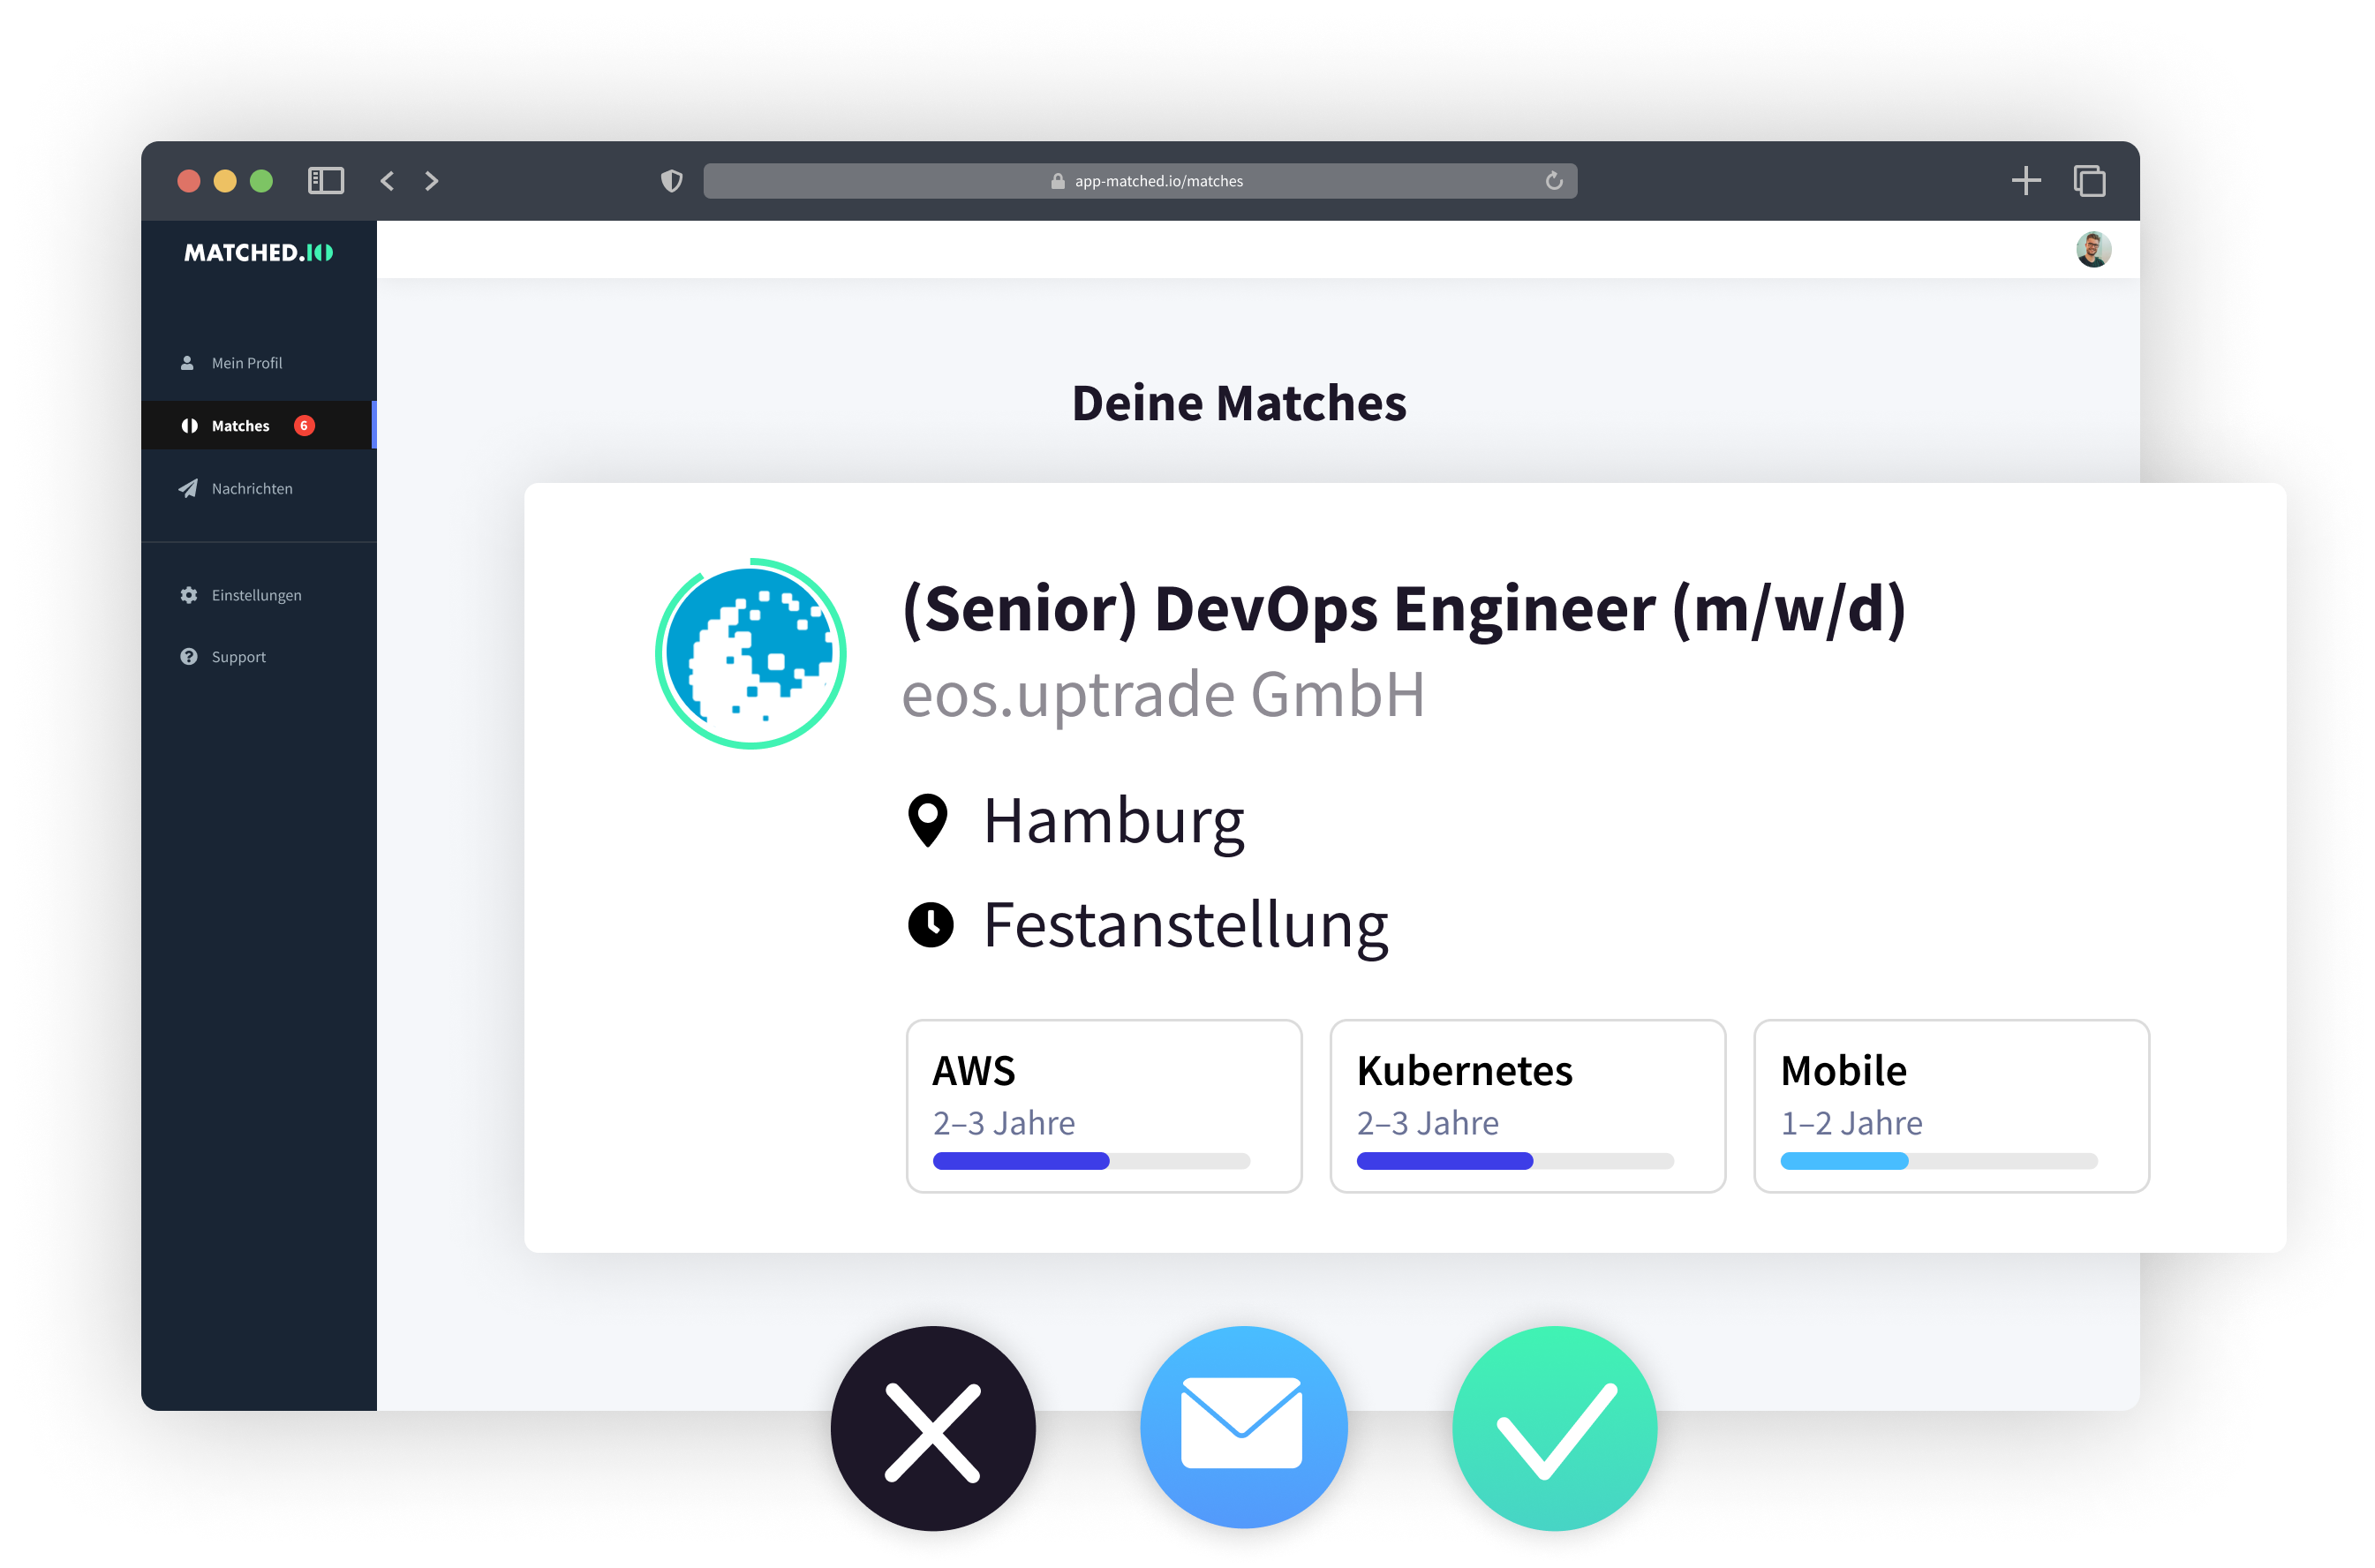 Matchcard von matched.io, einem Vermittlungsportal für Entwicklerjobs